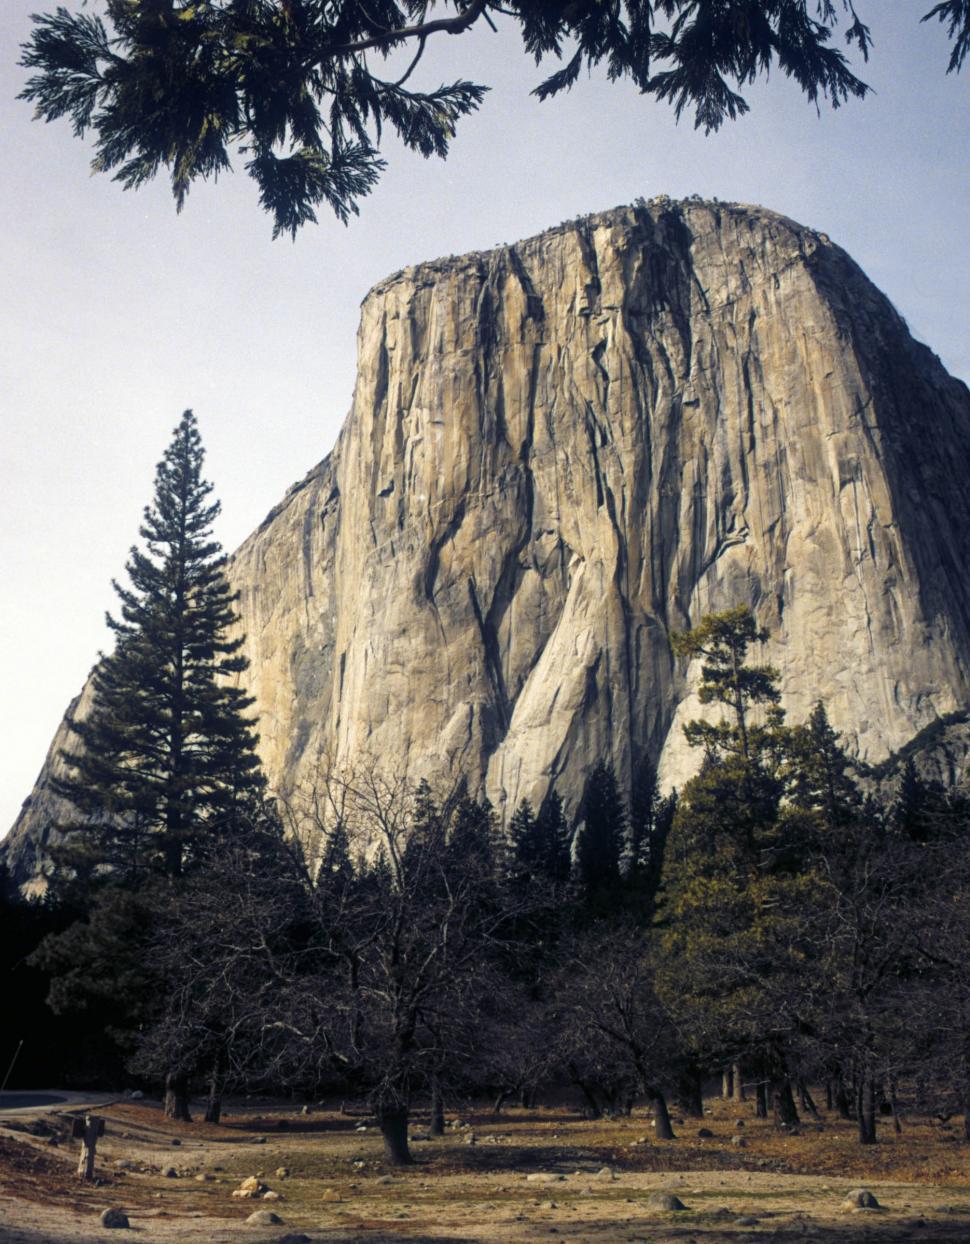 Free Image of El Capitan Rock - Yosemite National Park 